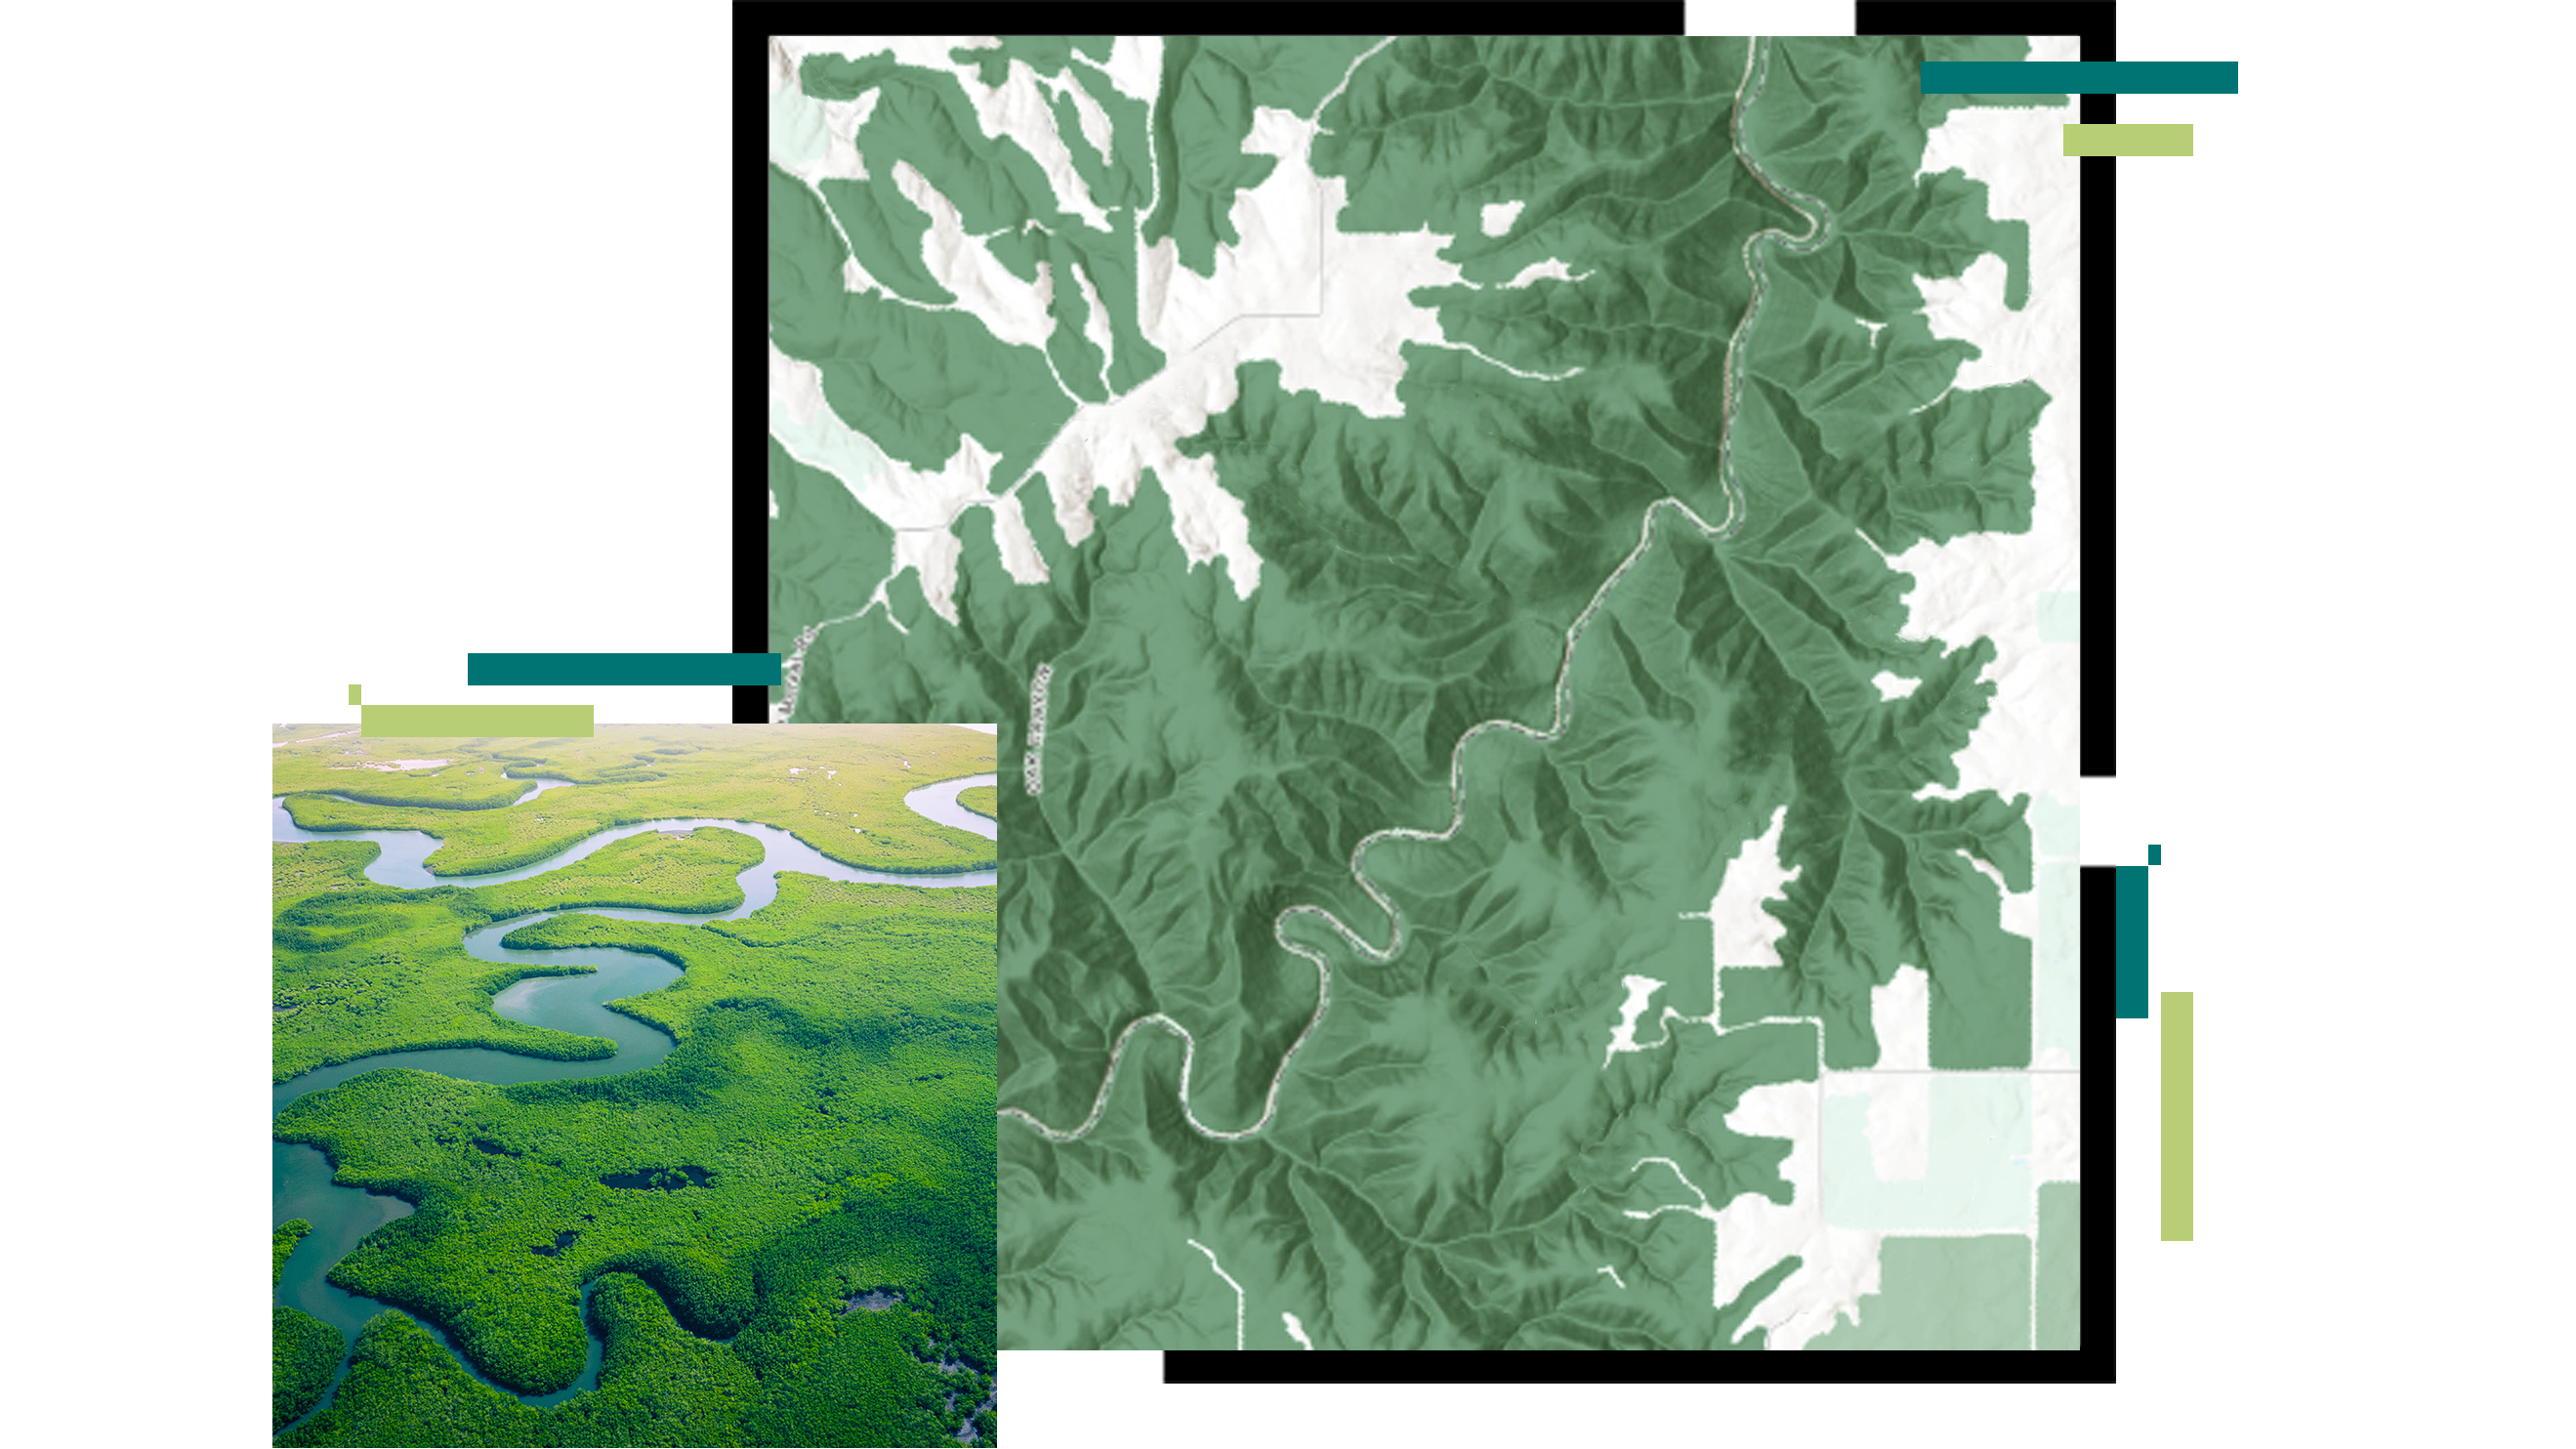 Mappa a curve di rilievo di un fiume serpeggiante e un'immagine aerea di una foresta di mangrovie verde brillante attraversata da un fiume blu.